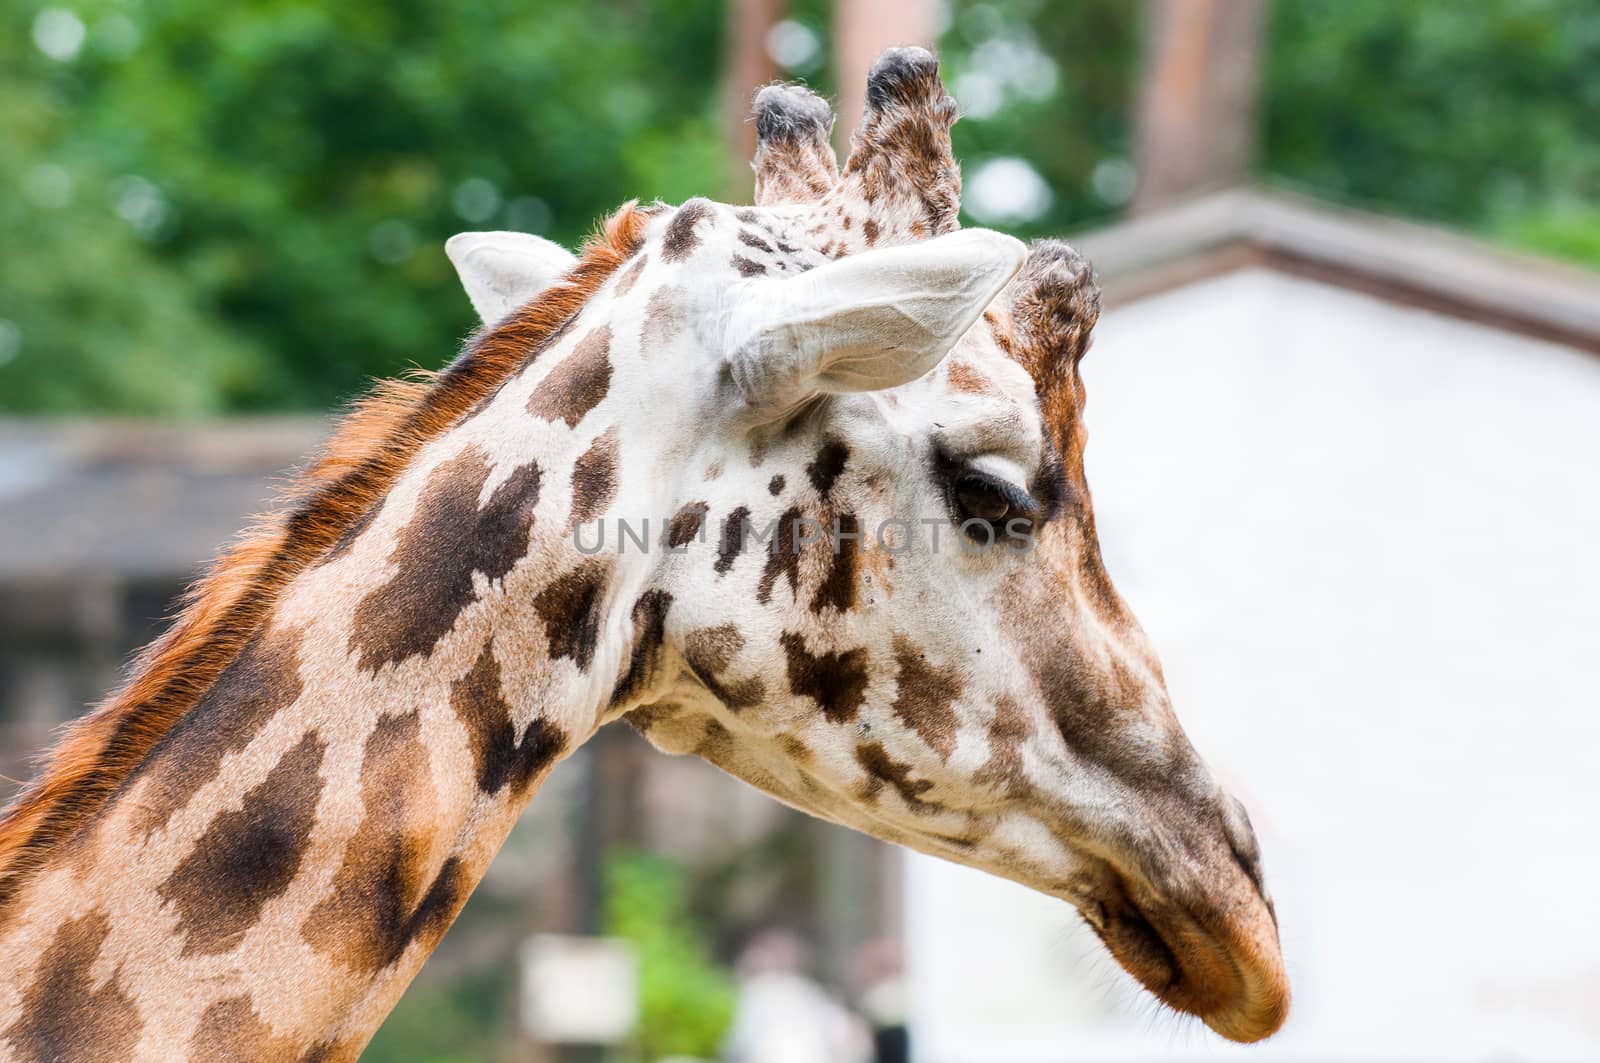 Giraffe close up portrait outside in zoo by infinityyy